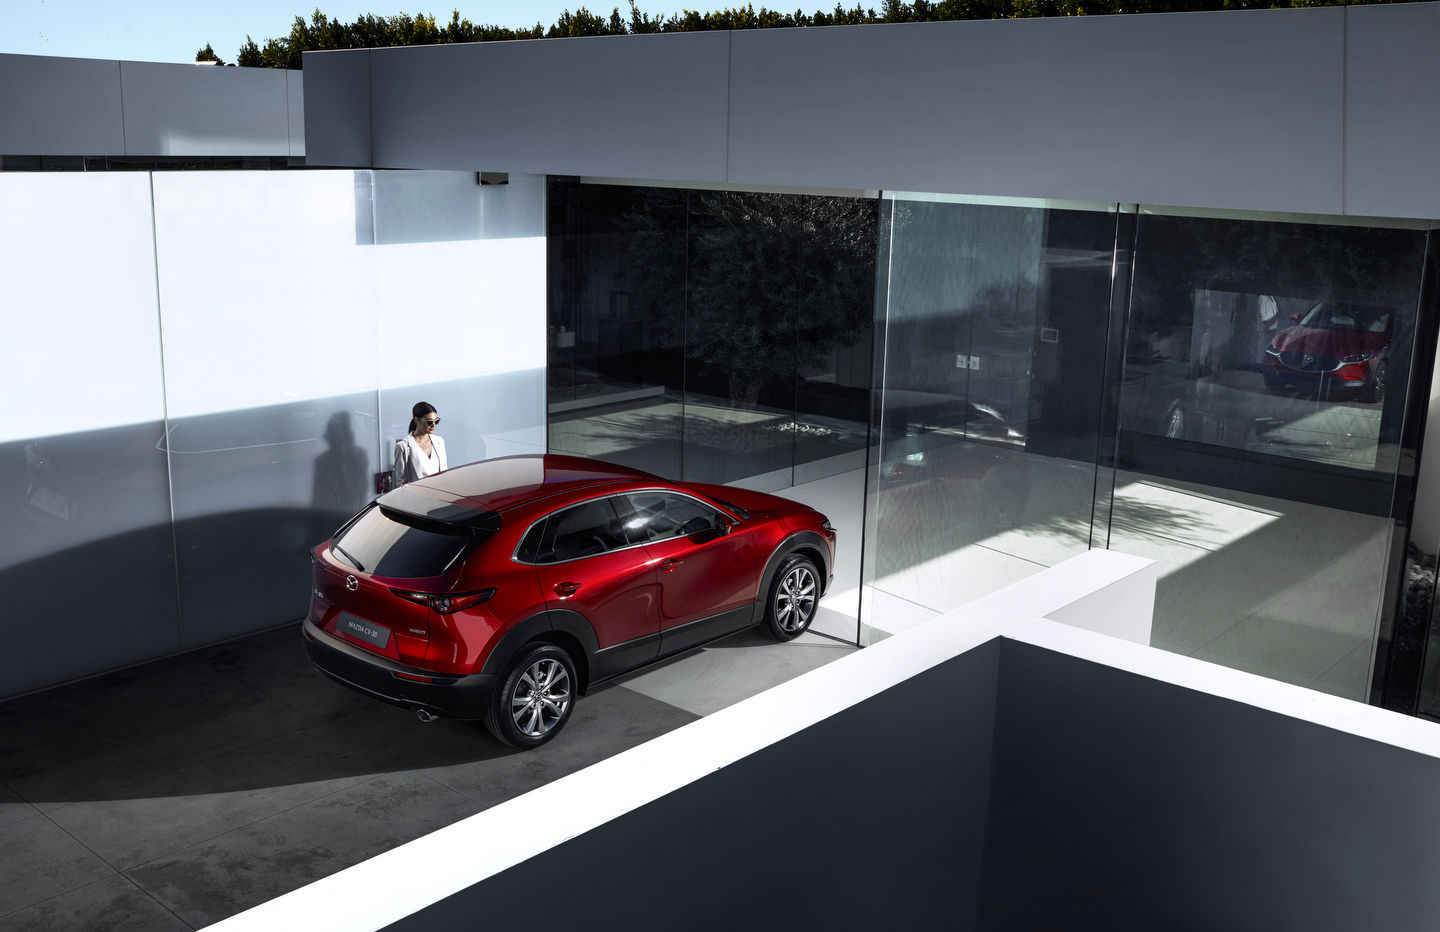 2021 Mazda CX-30 vs. 2022 Kia Seltos: More Performance and Refinement